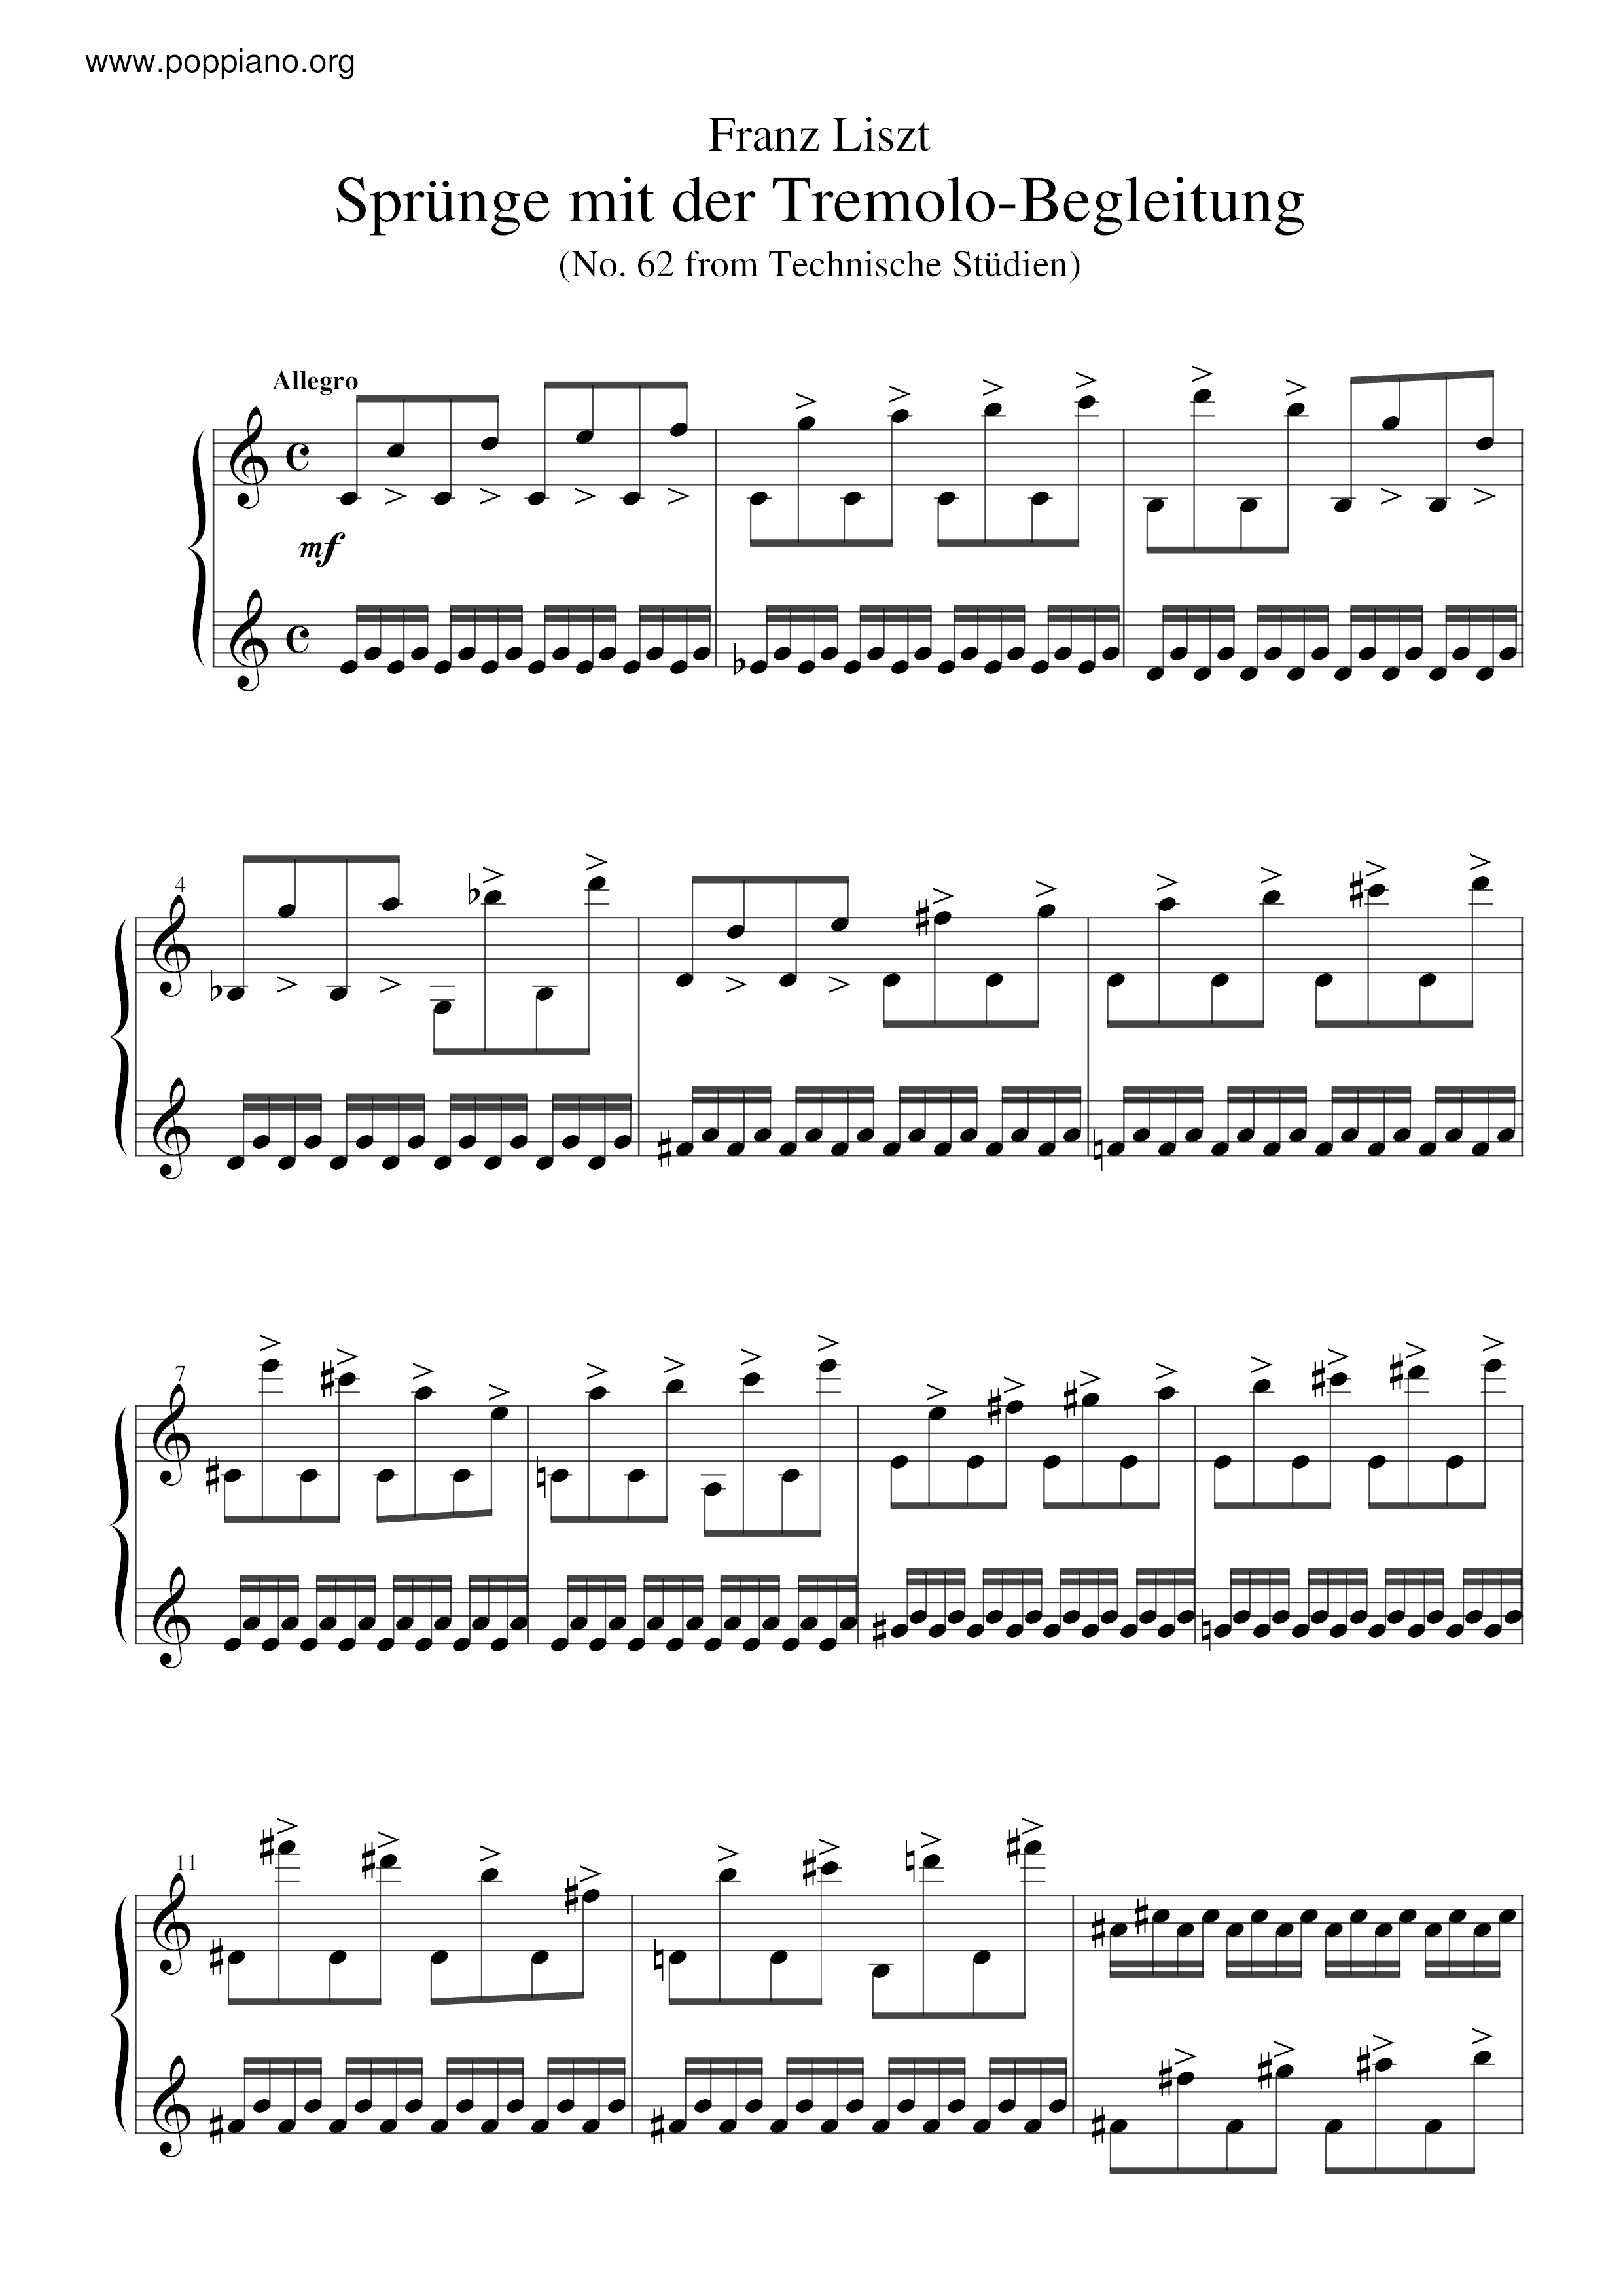 Sprunge mit der Tremolo-Begleitung, S.146/62ピアノ譜